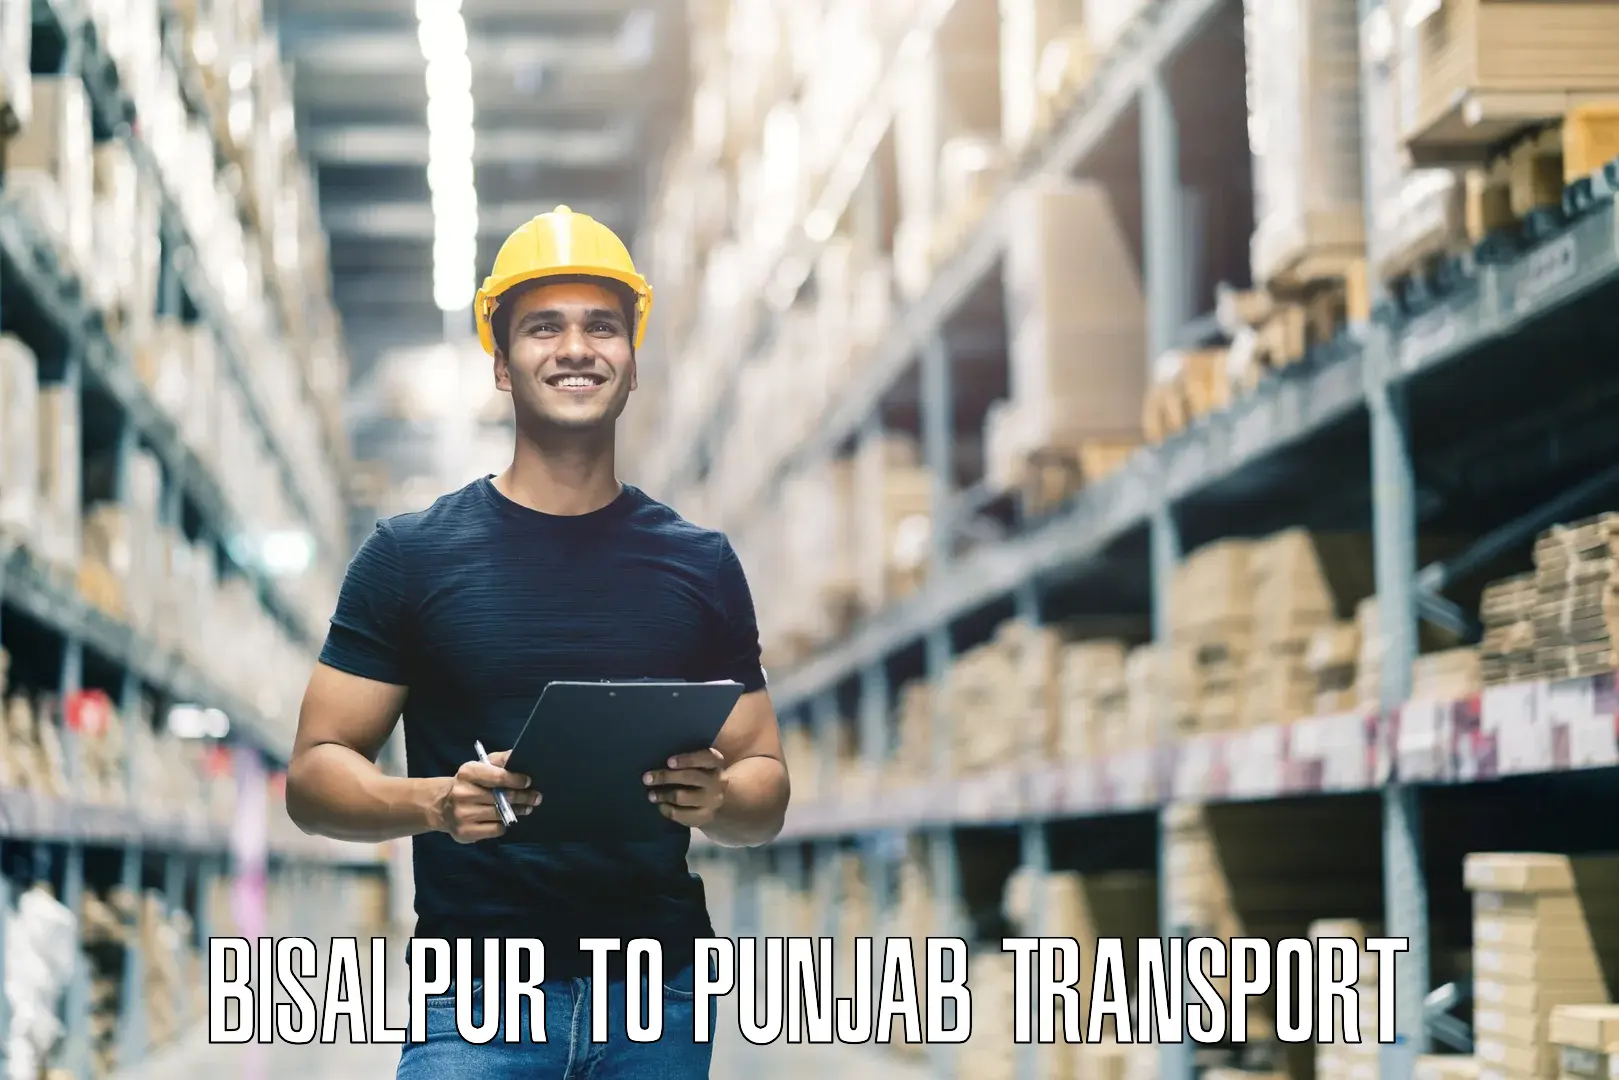 Parcel transport services Bisalpur to Punjab